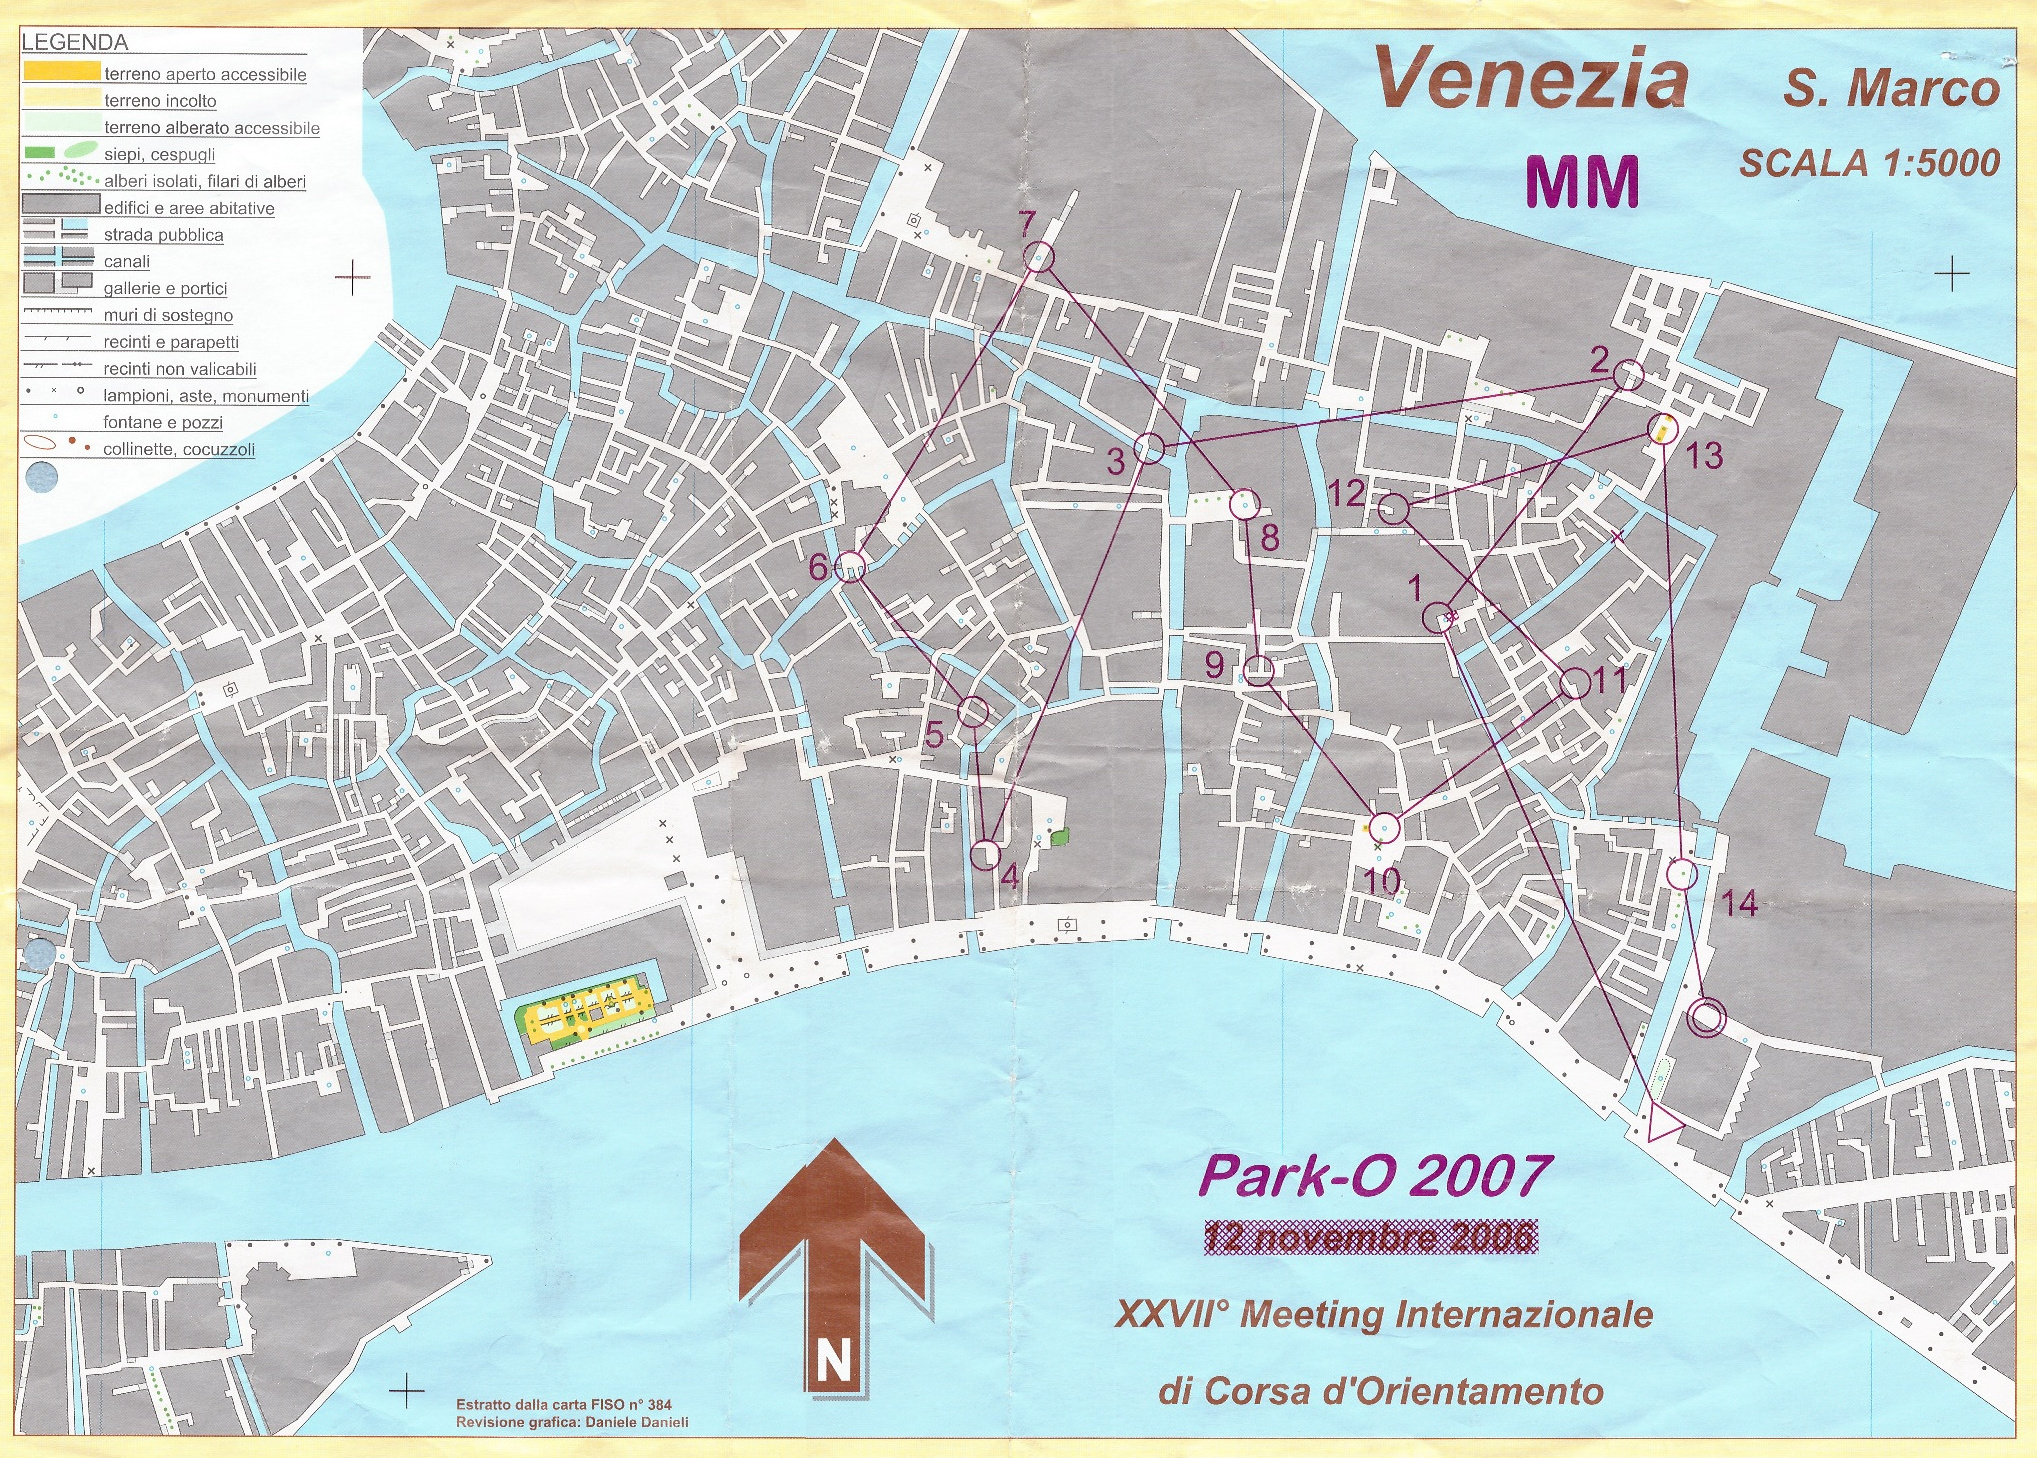 XXVII. Venedig O-Meeting - Park-O 2007 (10-11-2007)